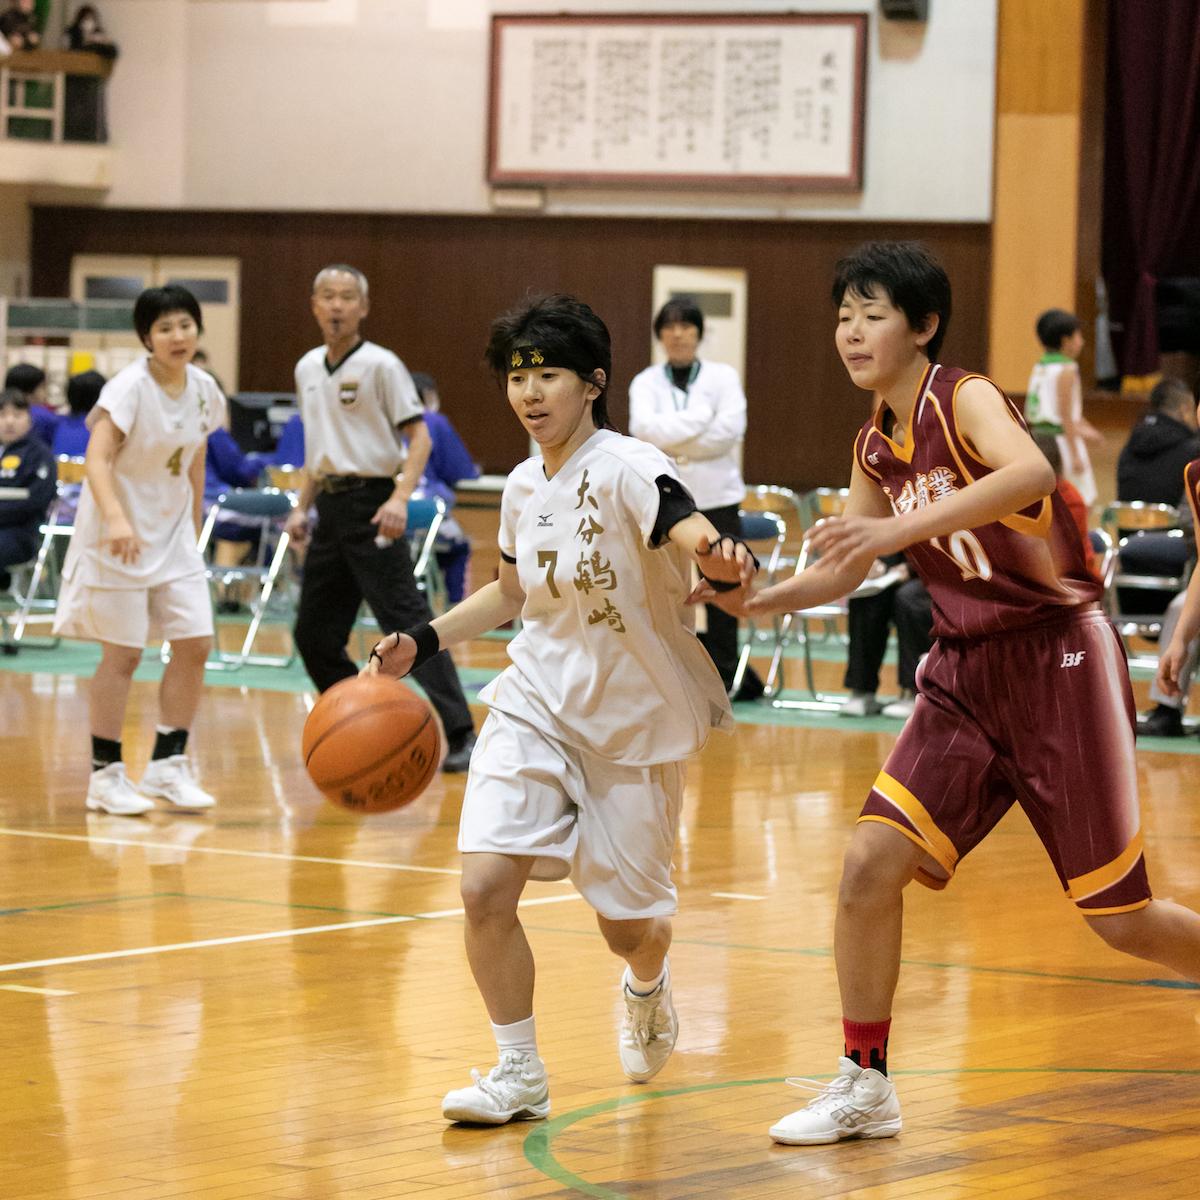 高校バスケそれぞれの現在地 大分鶴崎 女子 全員が主役になるチームを目指す オー エス Oita Sports